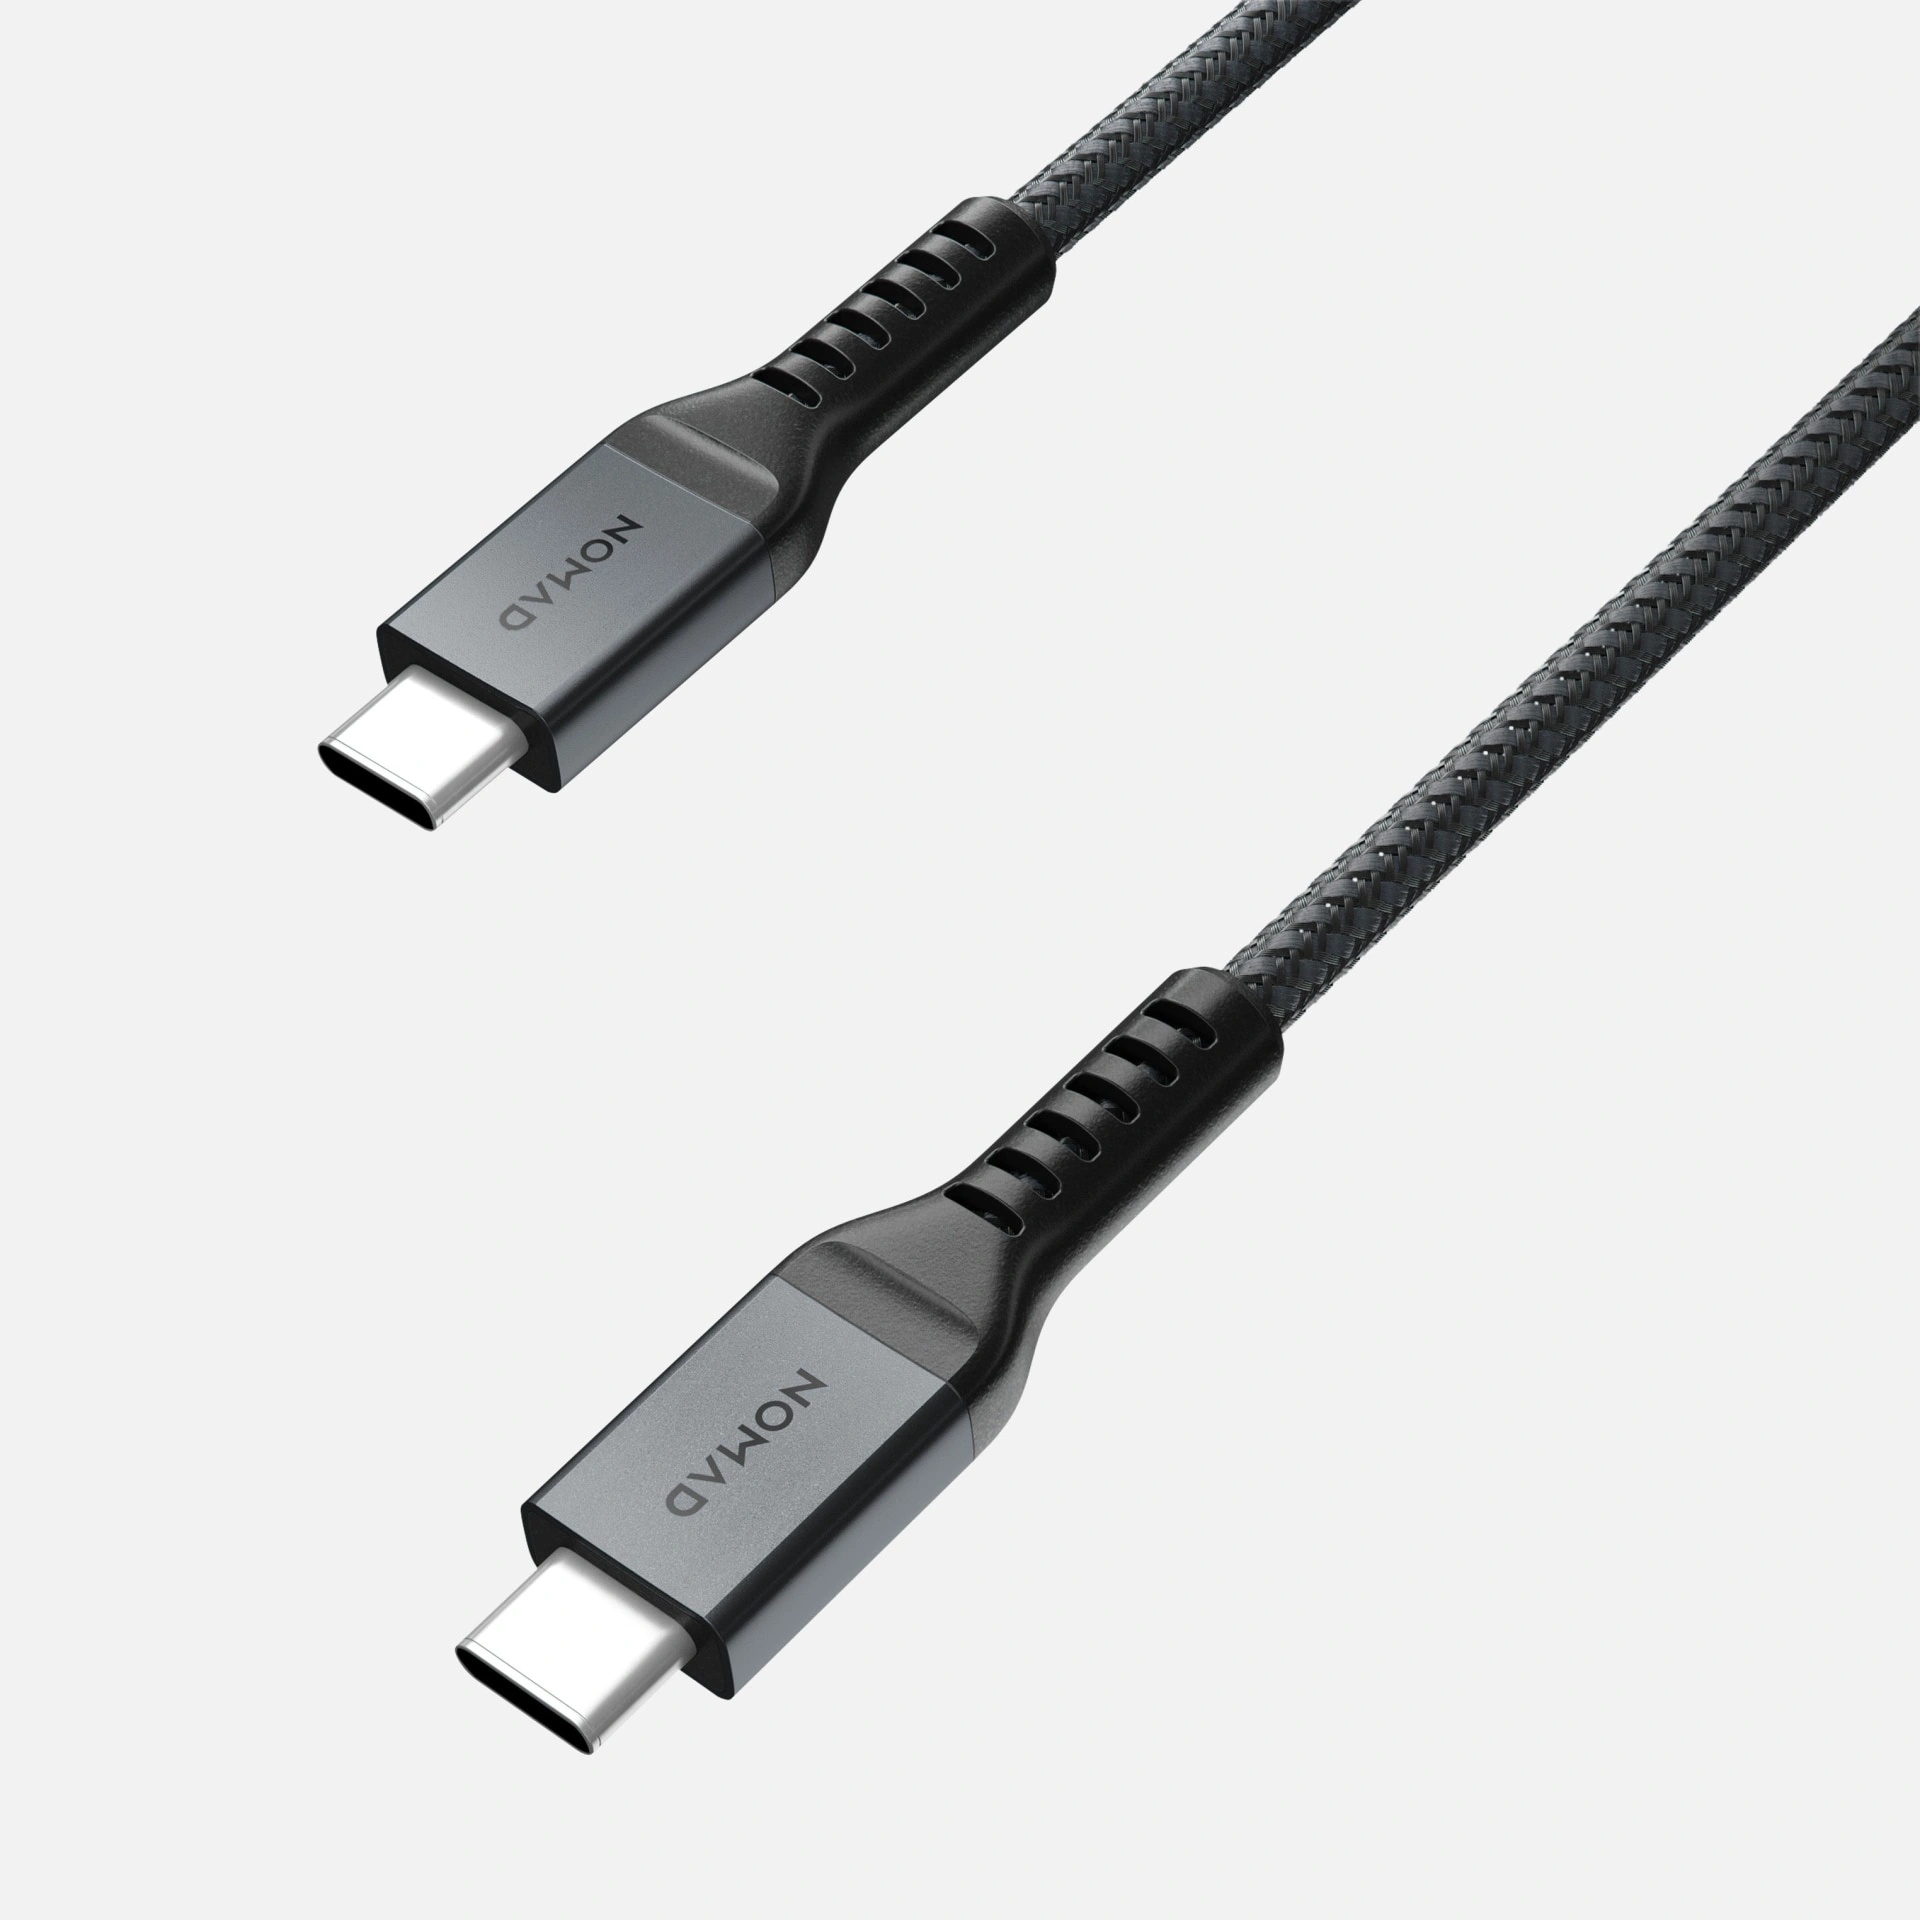 NOMAD Kevlar USB-C to USB-C kábel 1.5m - szénszürke